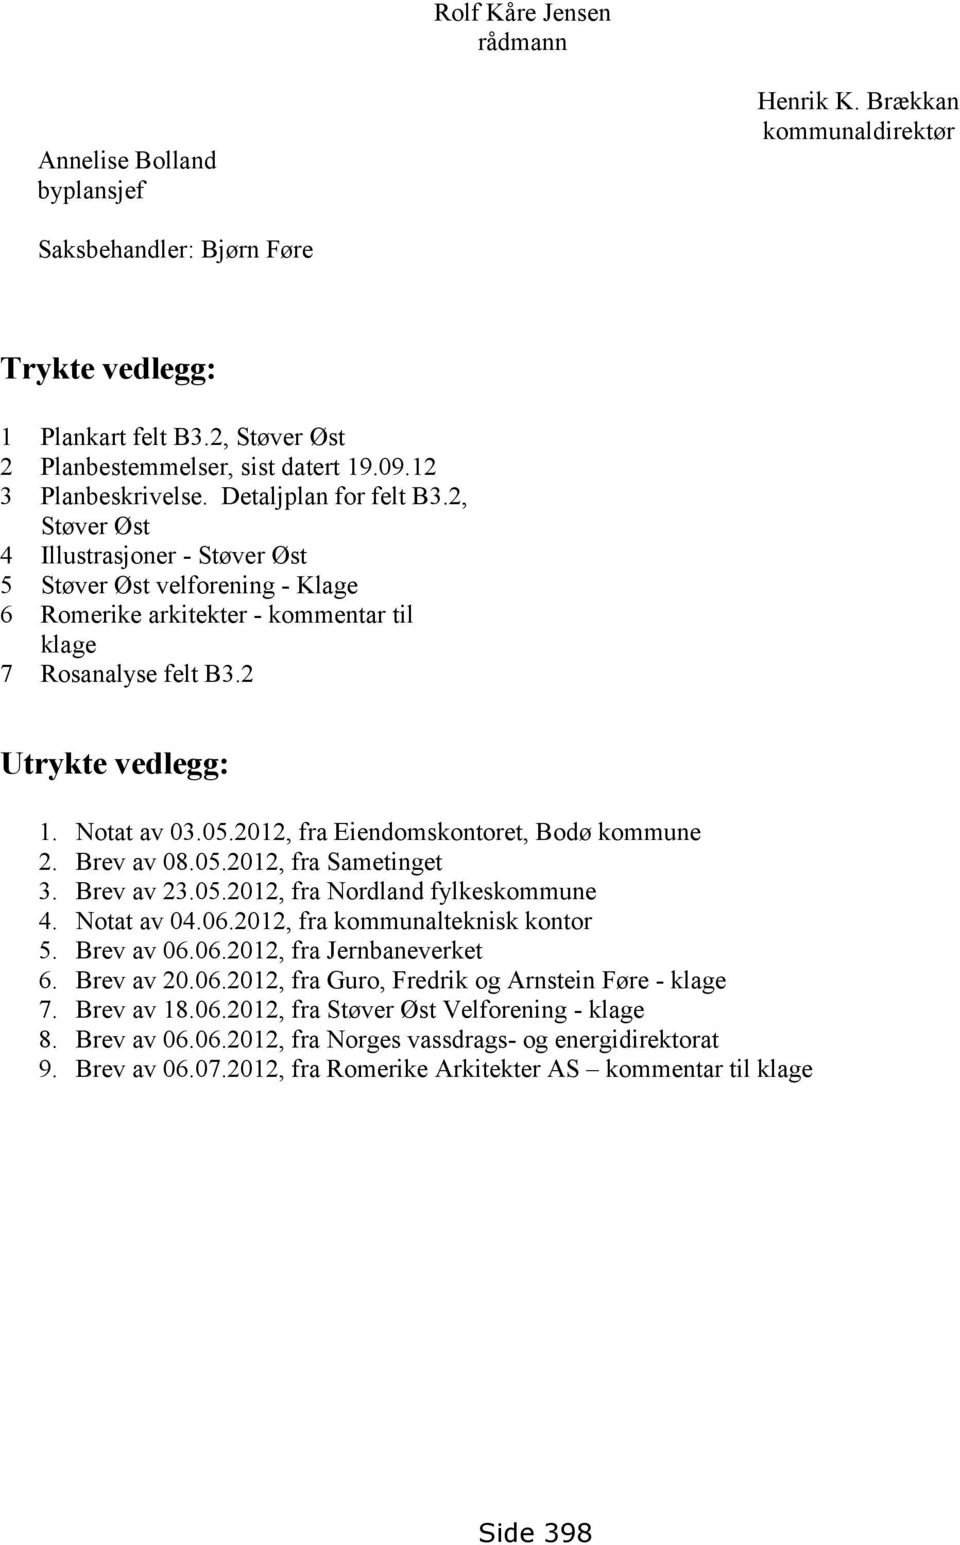 2 Utrykte vedlegg: 1. Notat av 03.05.2012, fra Eiendomskontoret, Bodø kommune 2. Brev av 08.05.2012, fra Sametinget 3. Brev av 23.05.2012, fra Nordland fylkeskommune 4. Notat av 04.06.